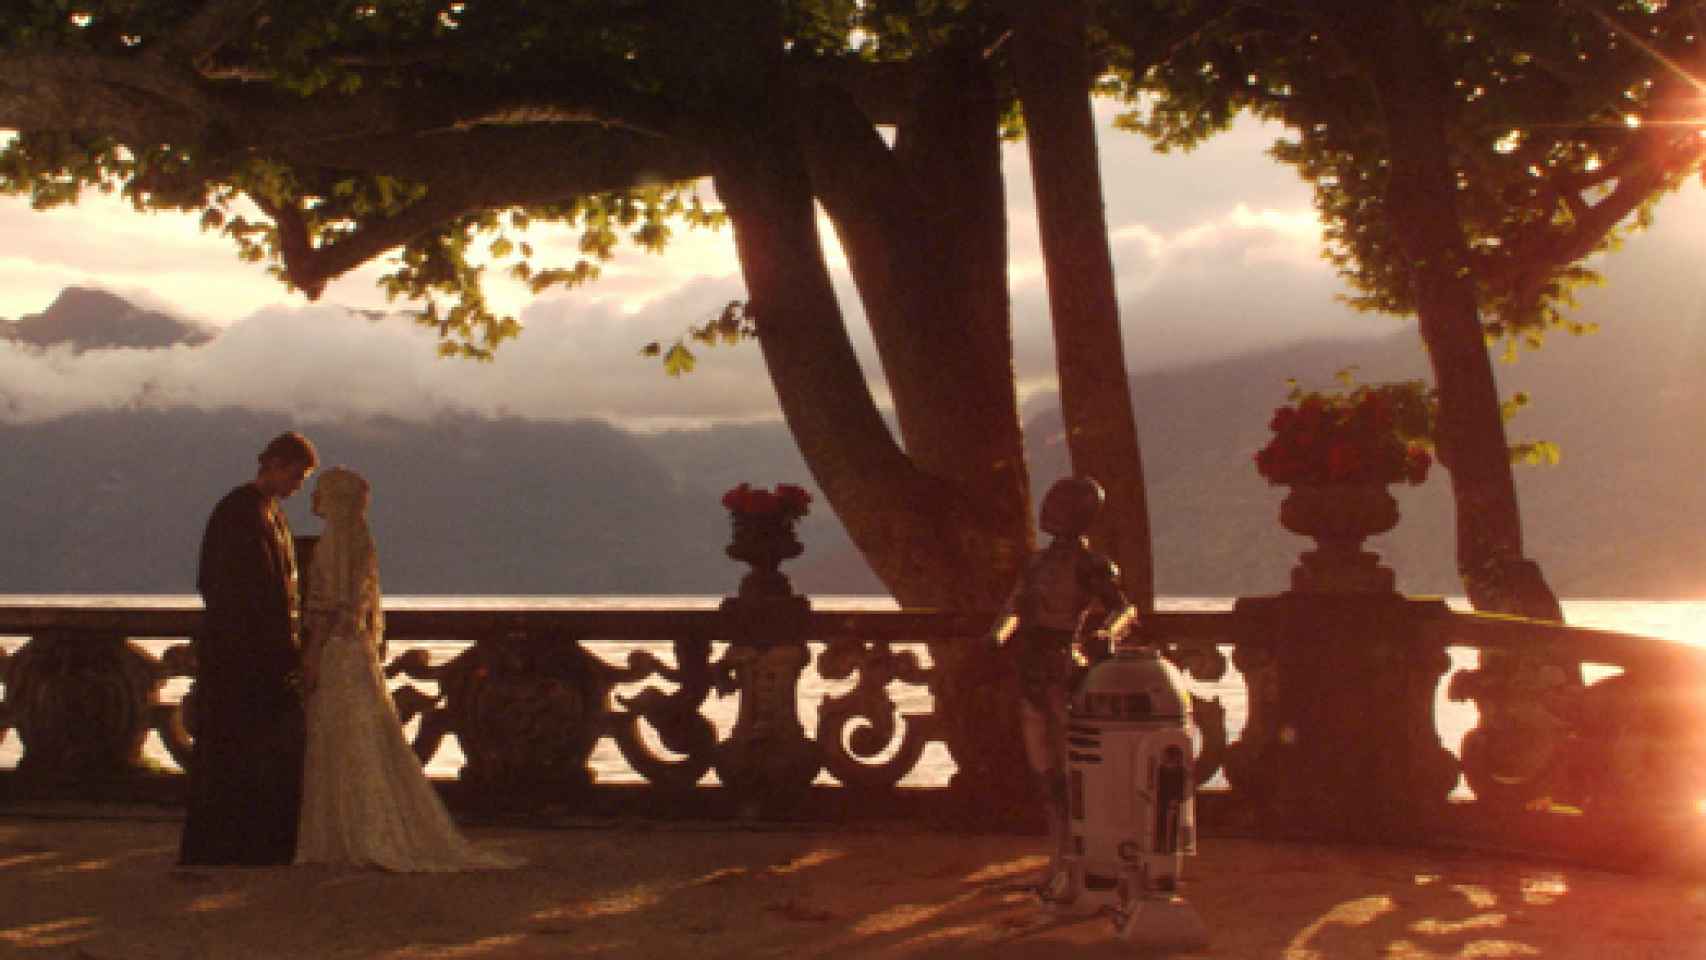 Escena de la saga Star Wars, rodada en una terraza de la Villa del Balbianello.